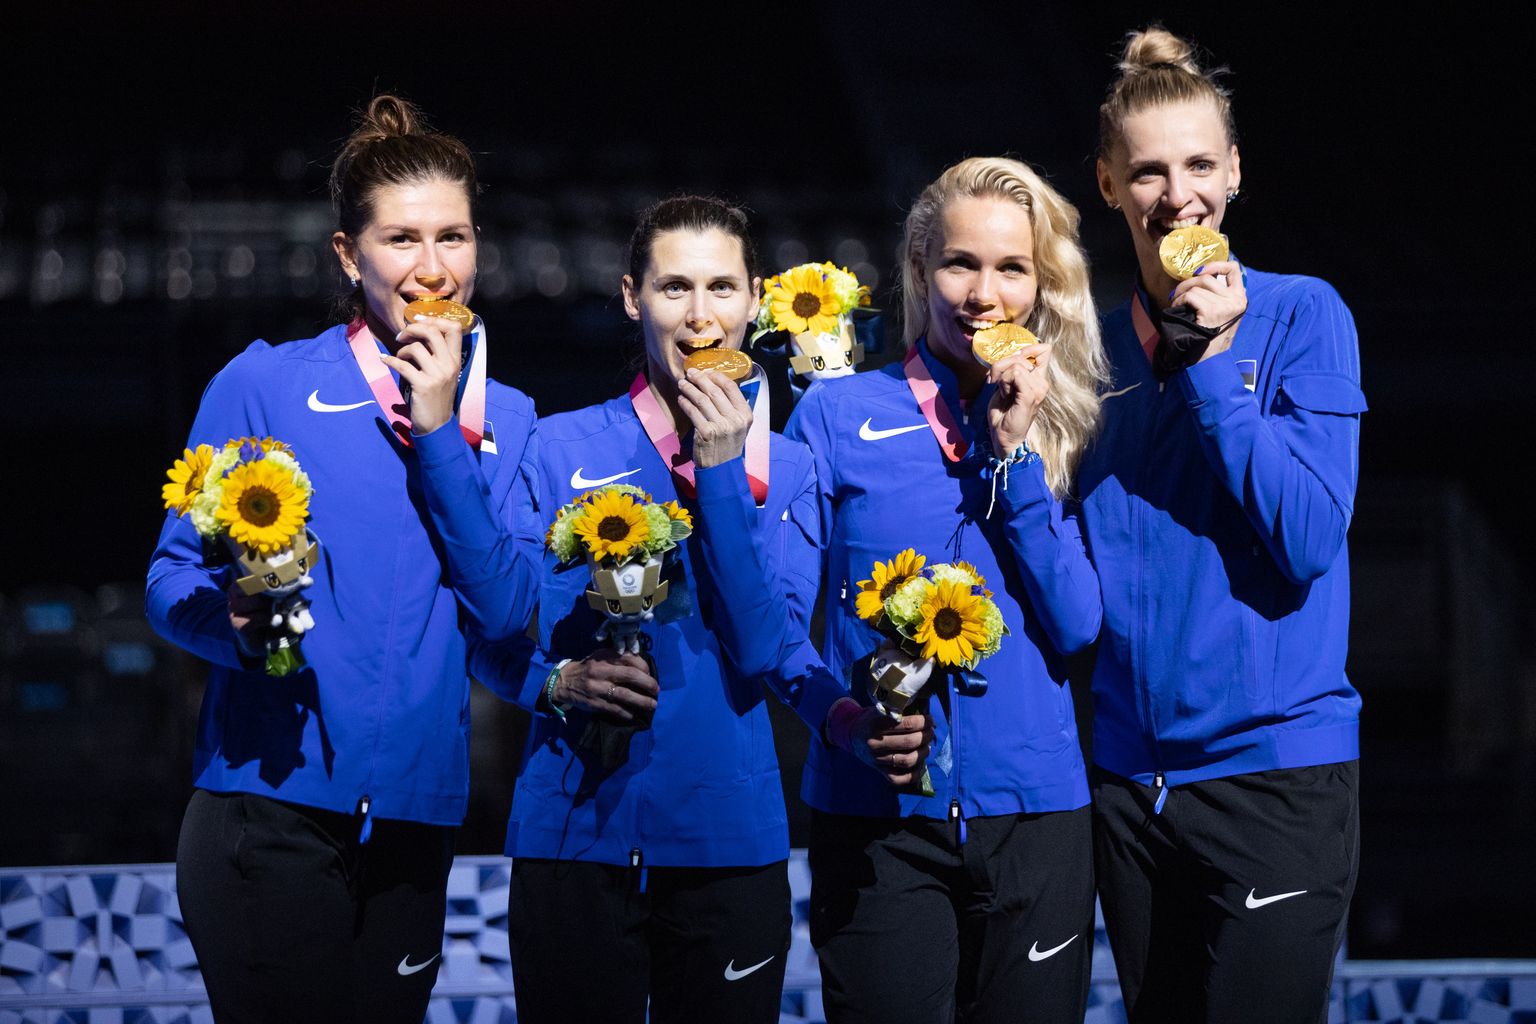 Eesti epeenaiskond alistas Tokyo olümpia finaalis Lõuna-Korea ja sai kulla. Pildil vasakult: Julia Beljajeva, Irina Embrich, Erika Kirpu ja Katrina Lehis